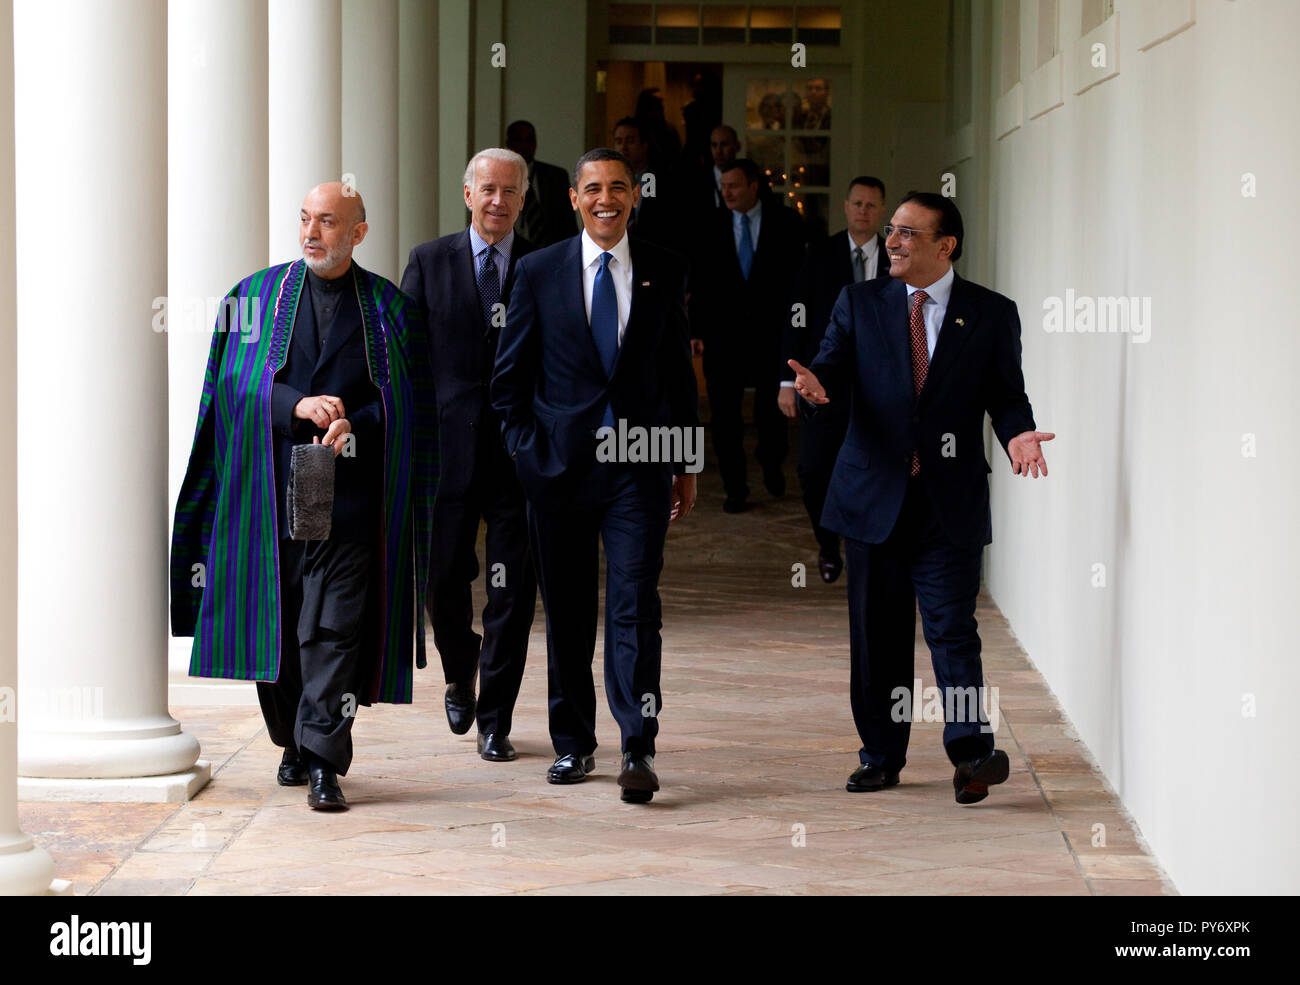 Le président Barack Obama (au centre) avec le président afghan Hamid Karzaï et le Pakistan le président Zardari à pied le long de la Colonnade à la suite d'un Afghan-Pakistan-nous réunion trilatérale à Salle du conseil des ministres le 6 mai 2009. Photo Officiel de la Maison Blanche par Pete Souza Banque D'Images